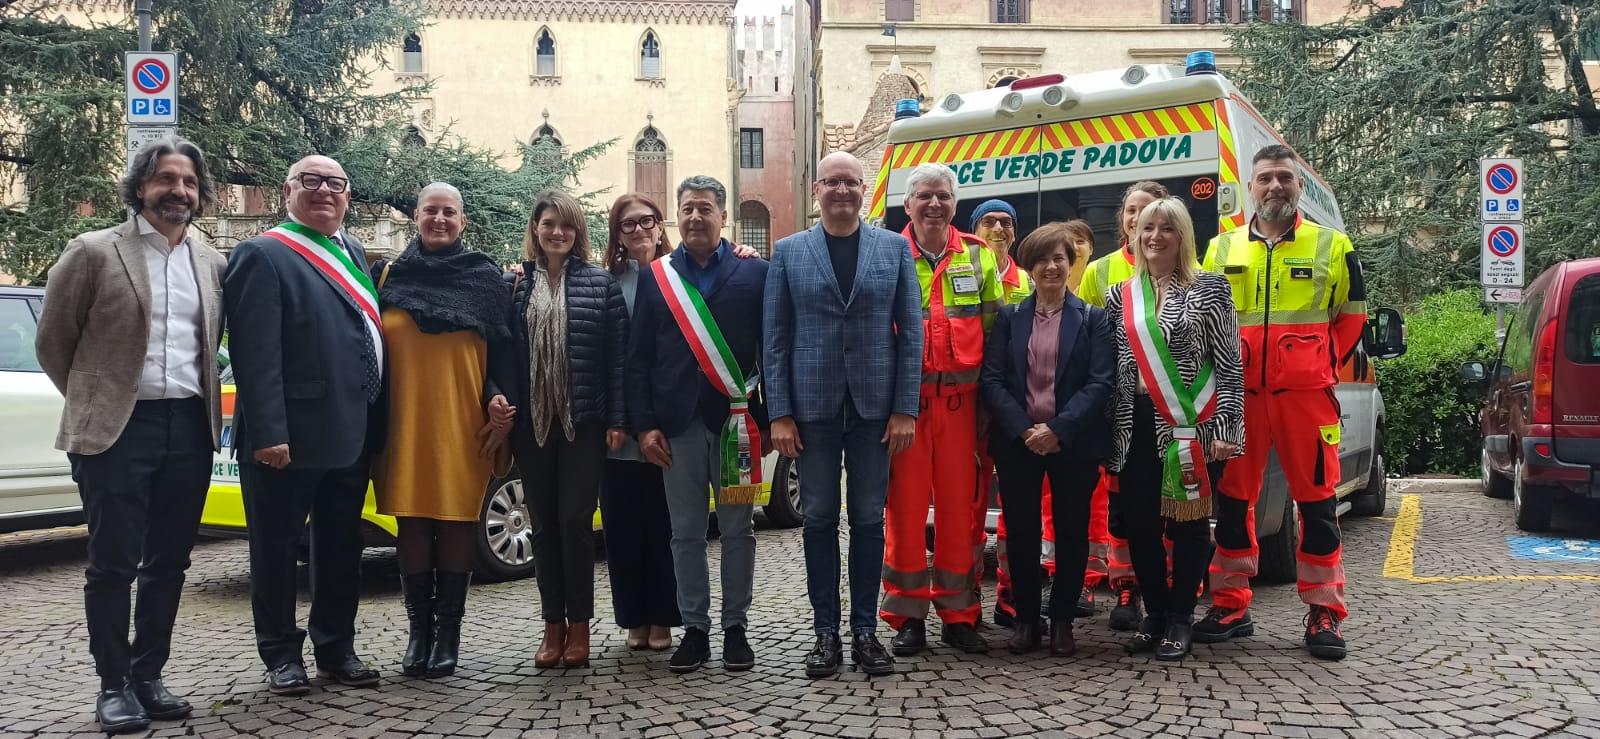 Programma iniziative per il 110 anniversario dalla fondazione di Croce Verde - Padova